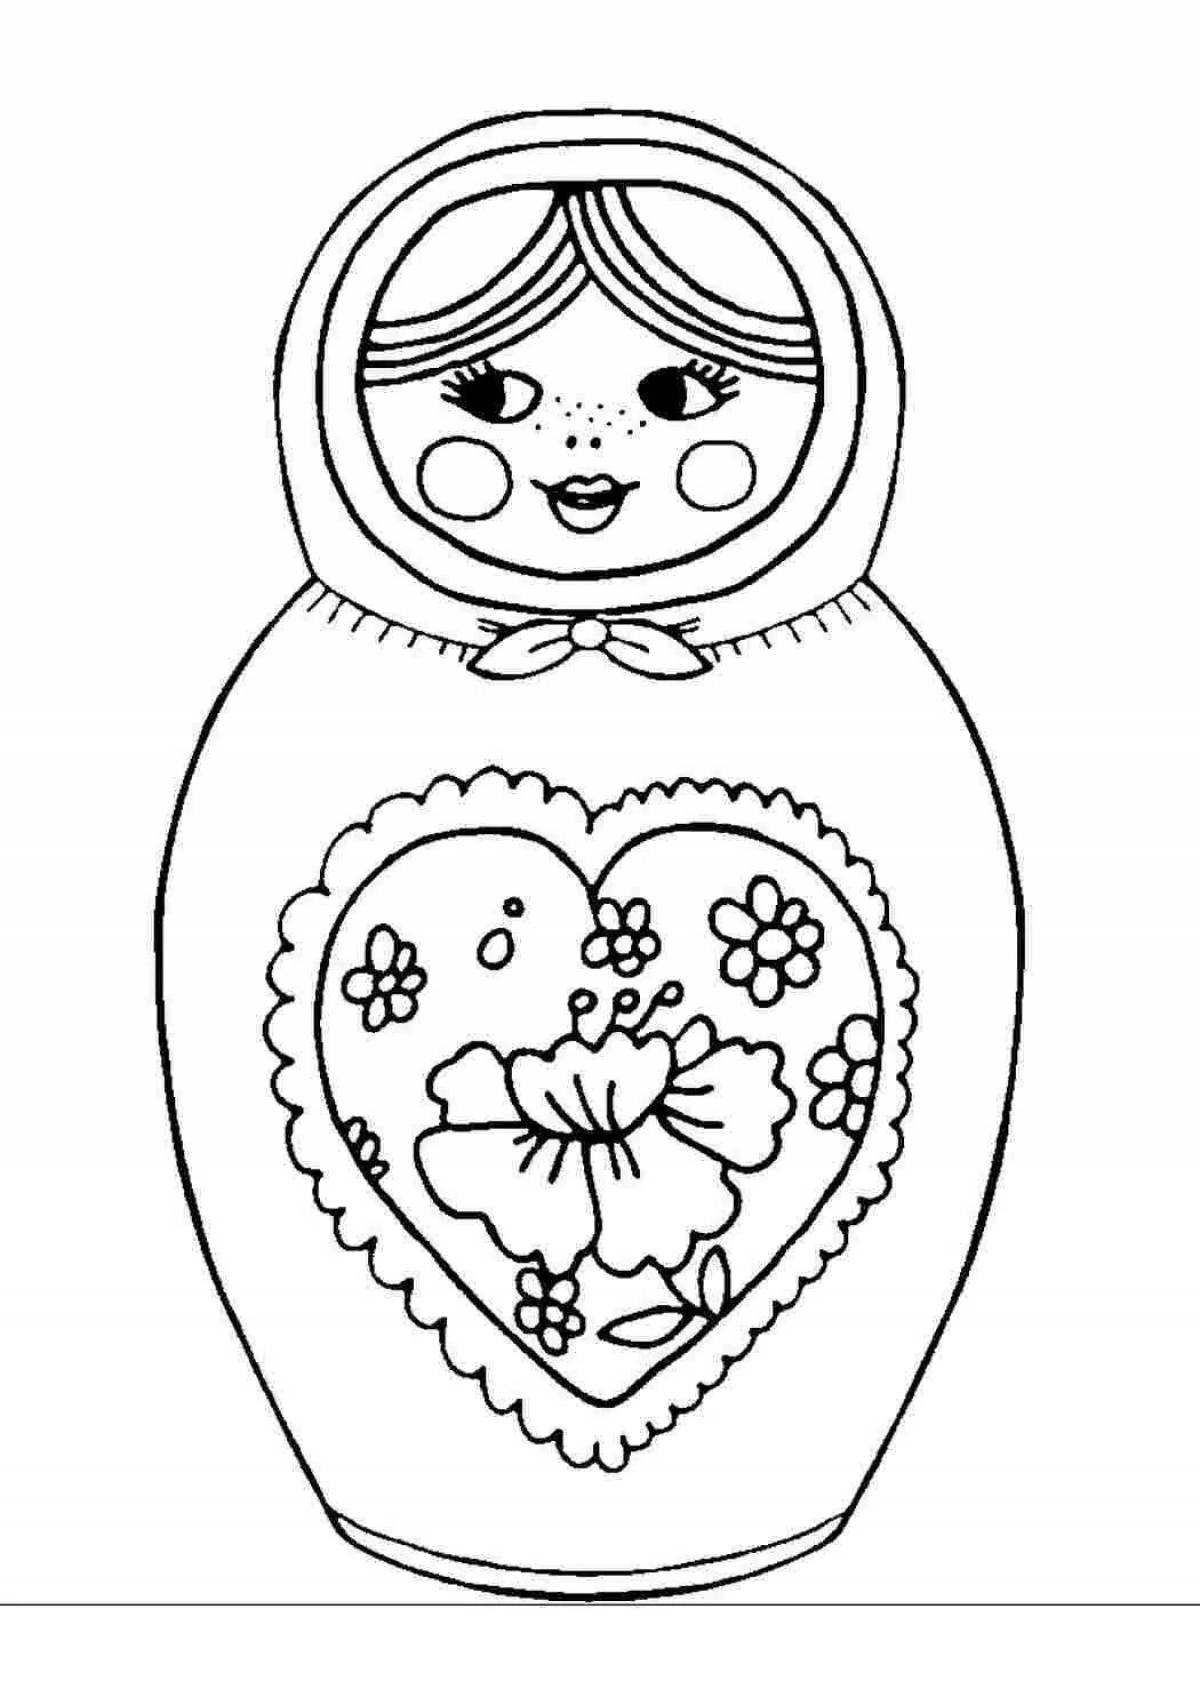 A fascinating drawing of a matryoshka doll